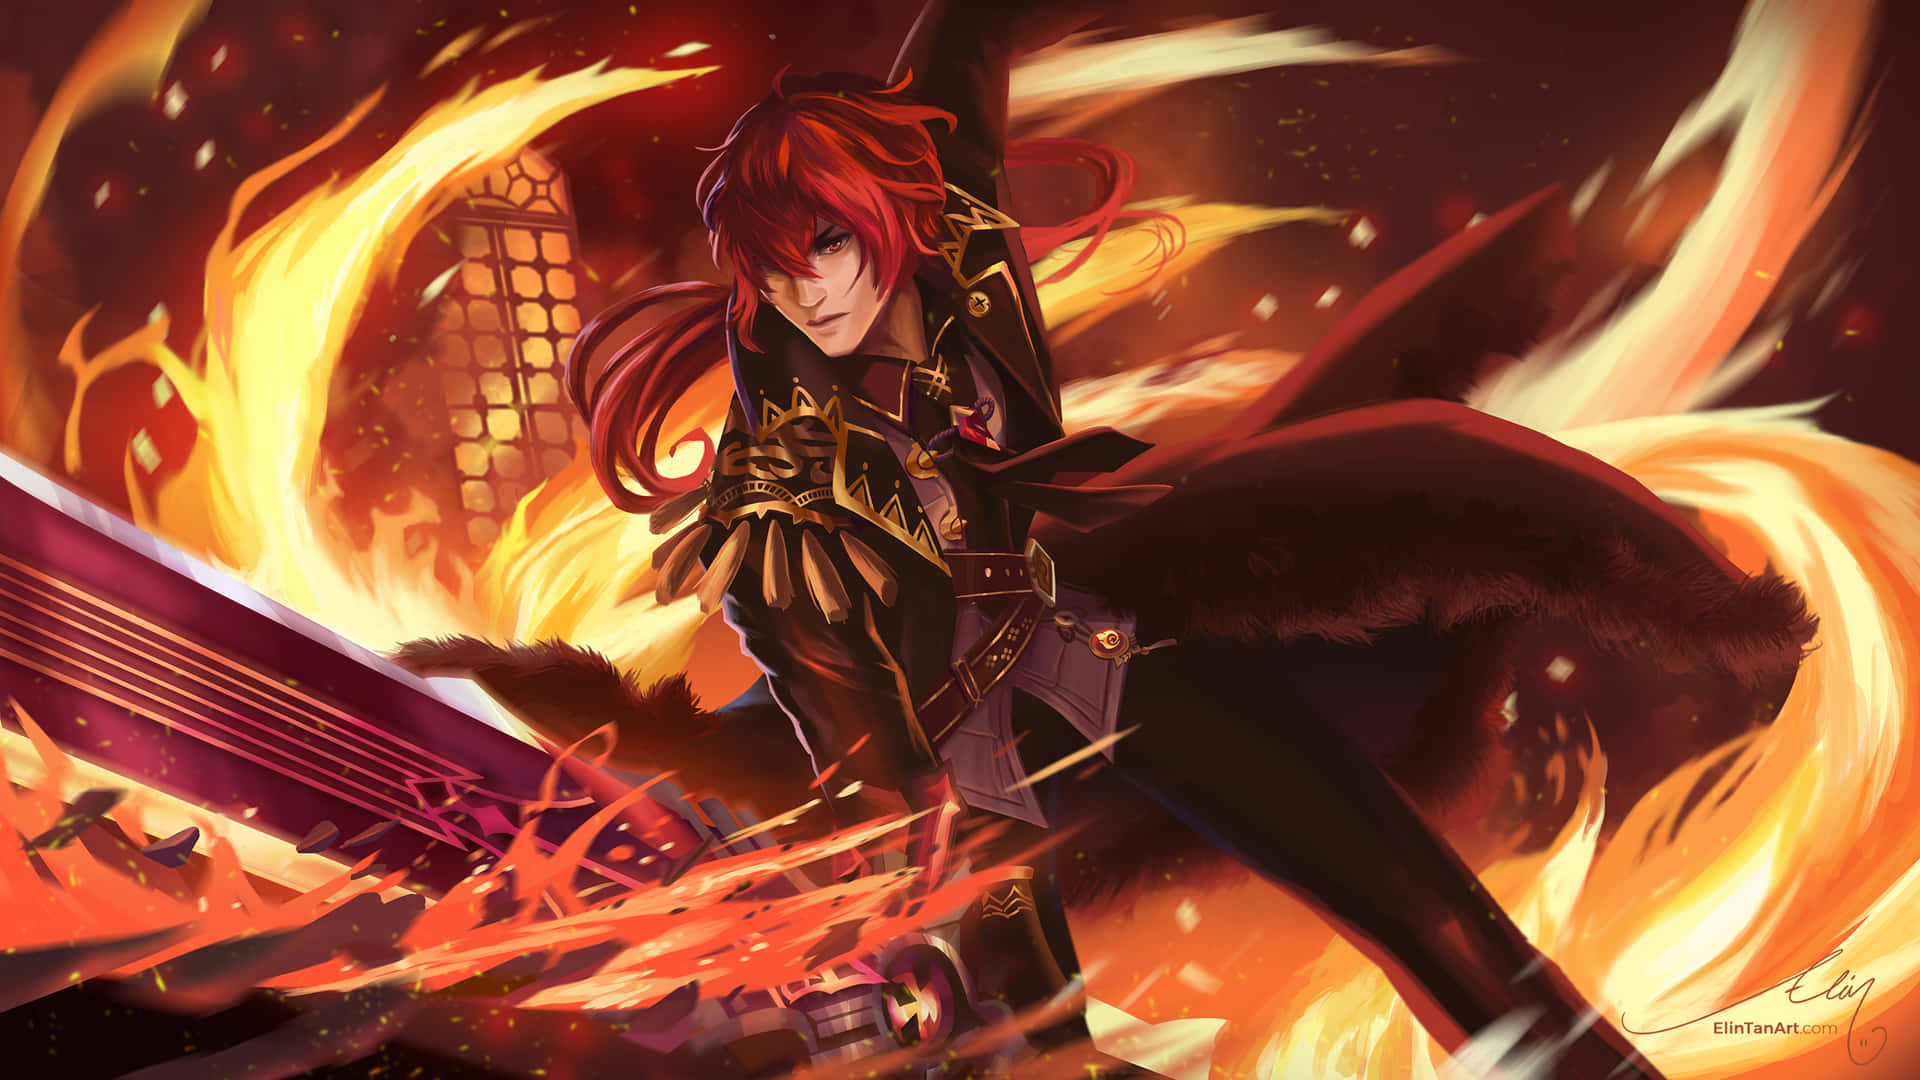 En pige med rødt hår, der holder et sværd i flammer Wallpaper